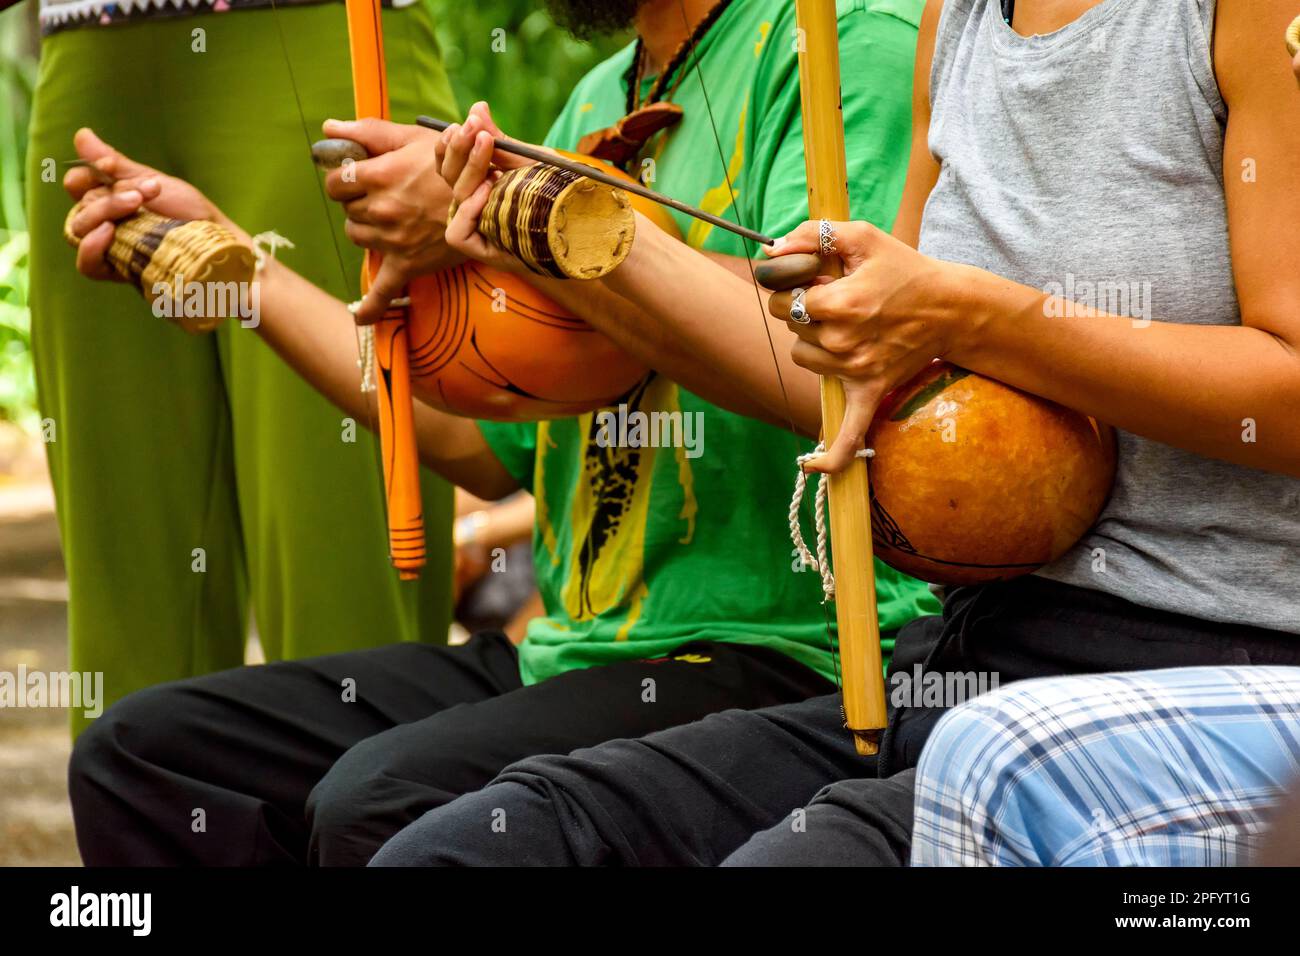 Musiker, die während einer Capoeira-Aufführung in den Straßen Brasiliens die Afro-brasilianischen Perkussion-Musikinstrumente Berimbau spielen Stockfoto